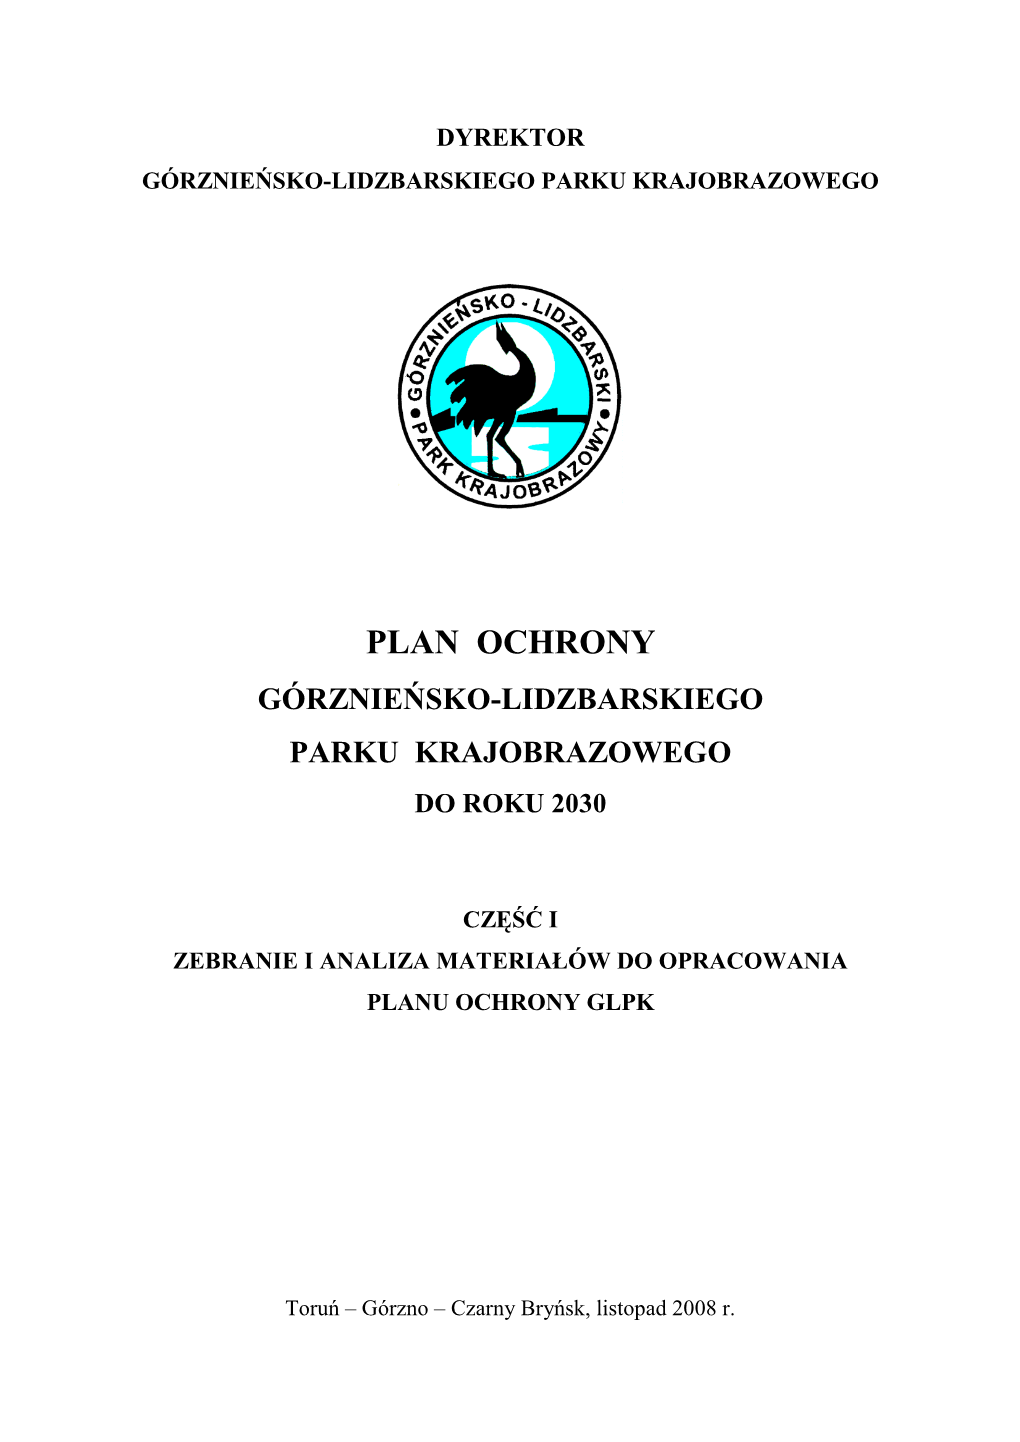 Plan Ochrony Górznieńsko-Lidzbarskiego Parku Krajobrazowego Do Roku 2030